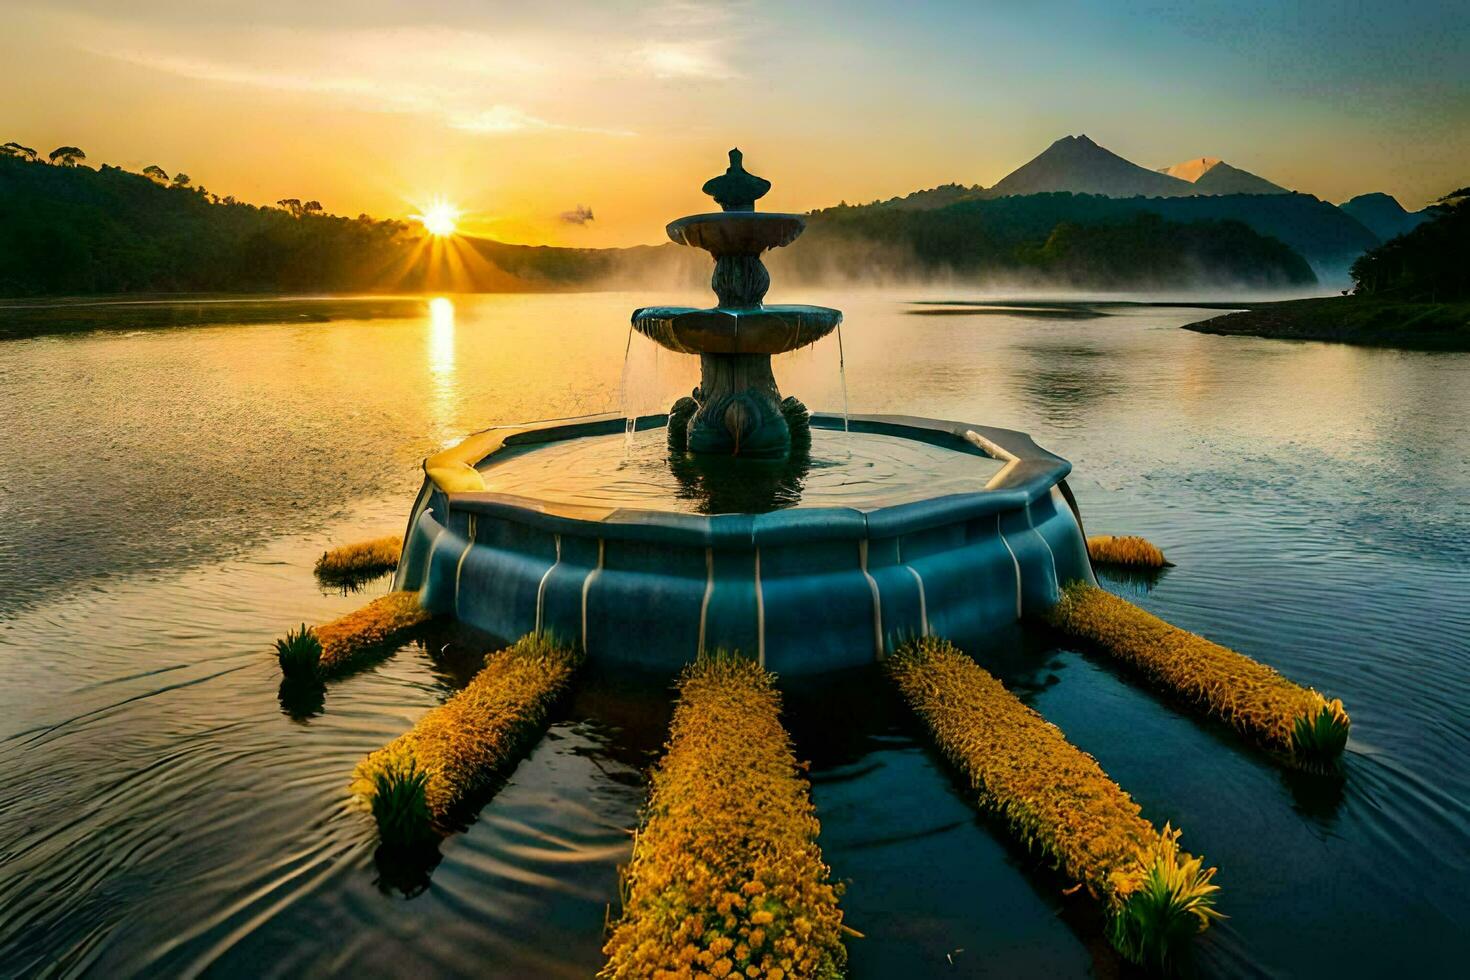 the sunrise over the lake. AI-Generated photo